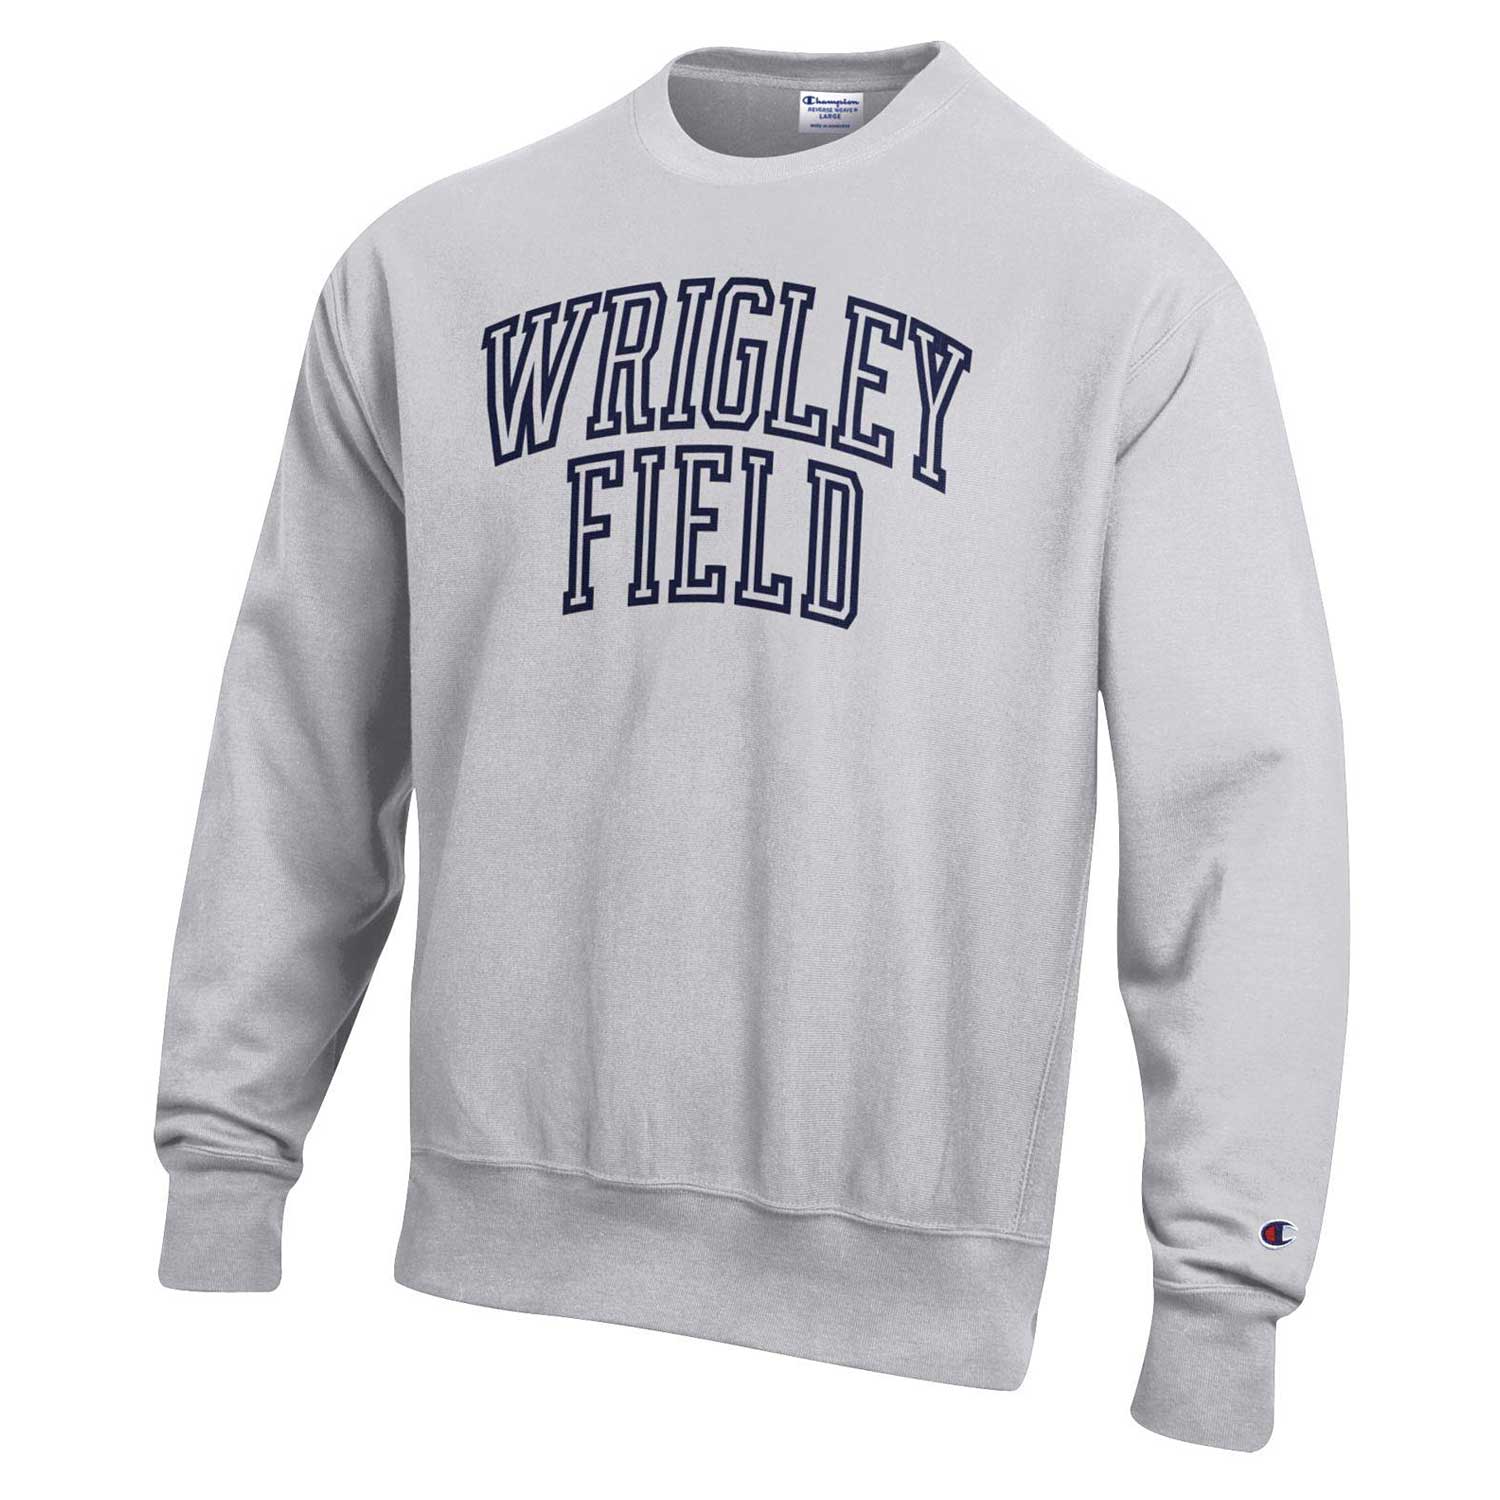 Chicago Flag Crew Neck Sweatshirt - dark grey - Great Chicago Gifts